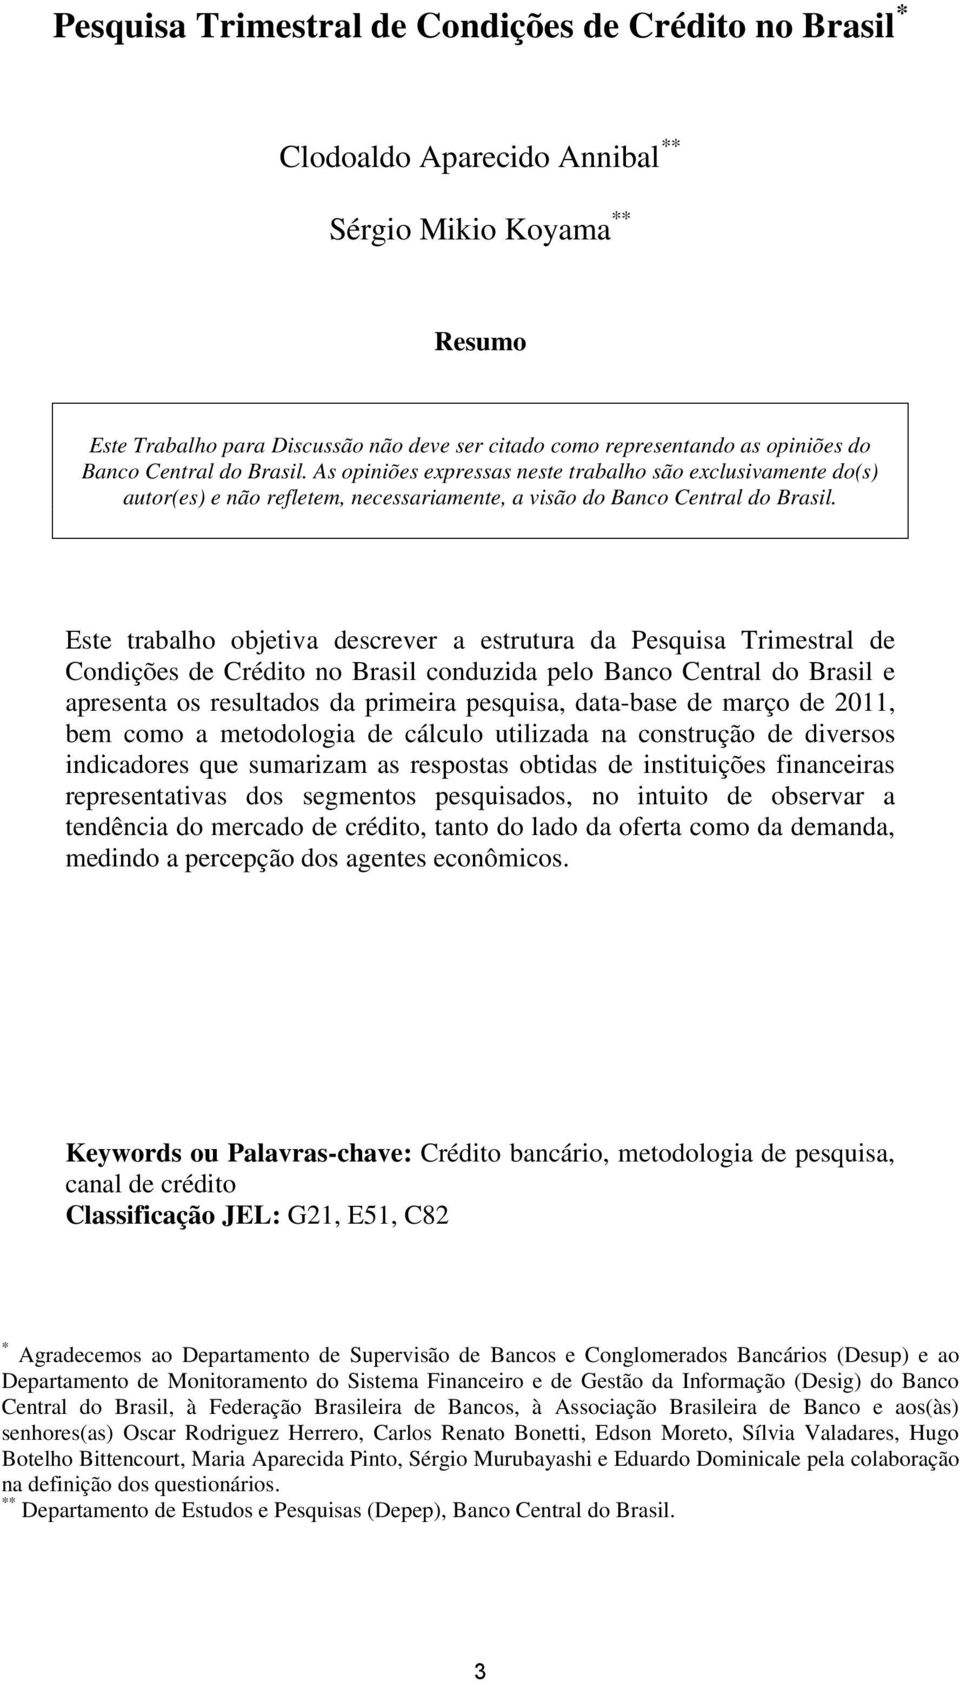 Este trabalho objetiva descrever a estrutura da Pesquisa Trimestral de Condições de Crédito no Brasil conduzida pelo Banco Central do Brasil e apresenta os resultados da primeira pesquisa, data-base